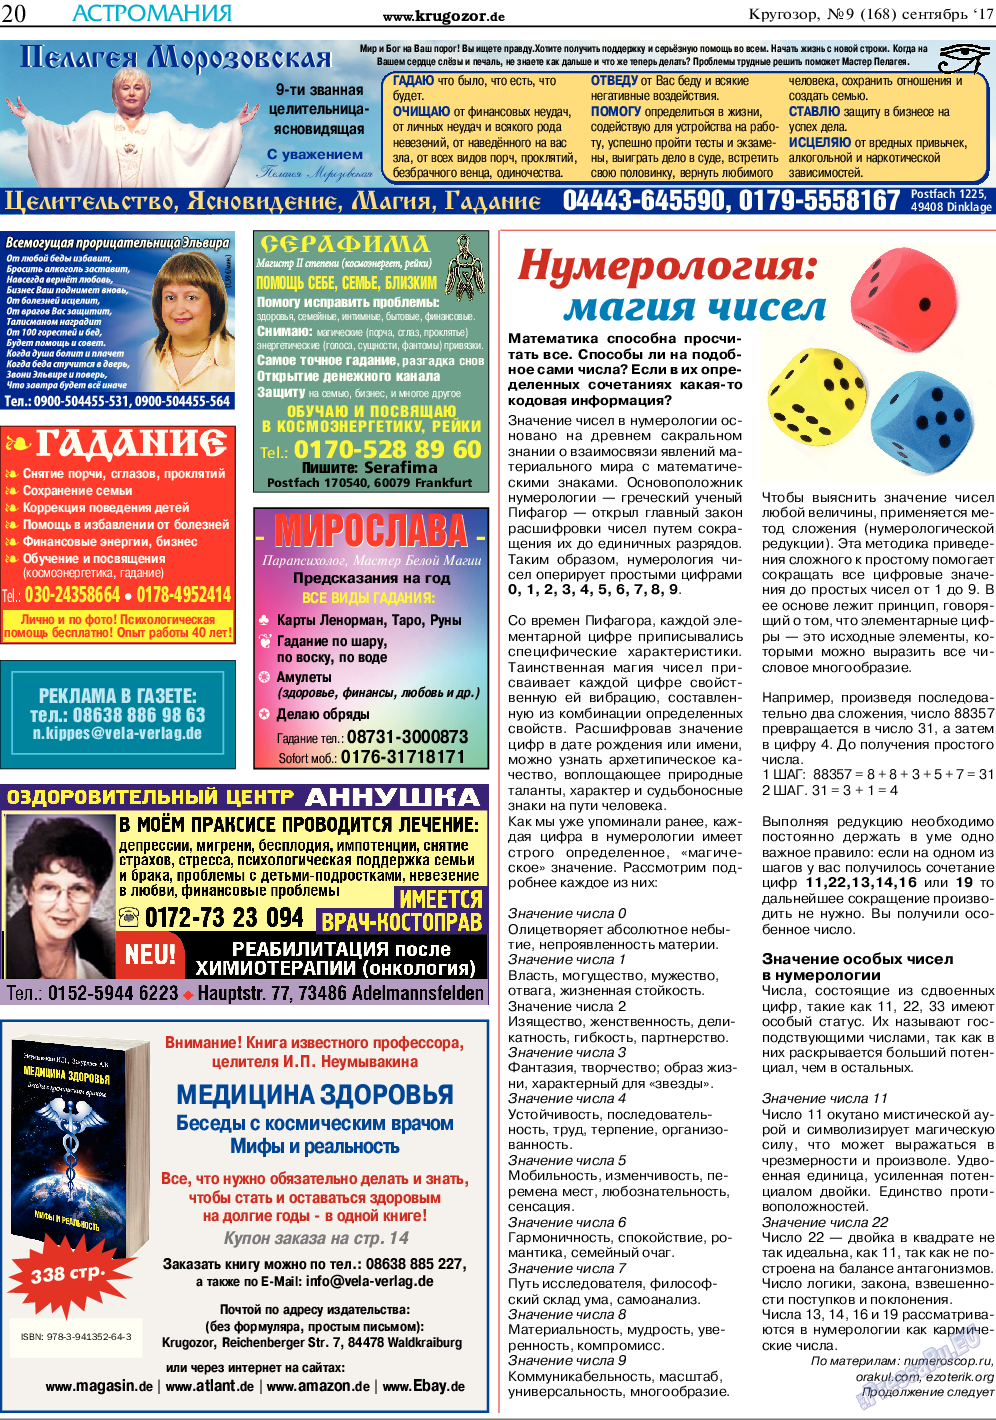 Кругозор, газета. 2017 №9 стр.20